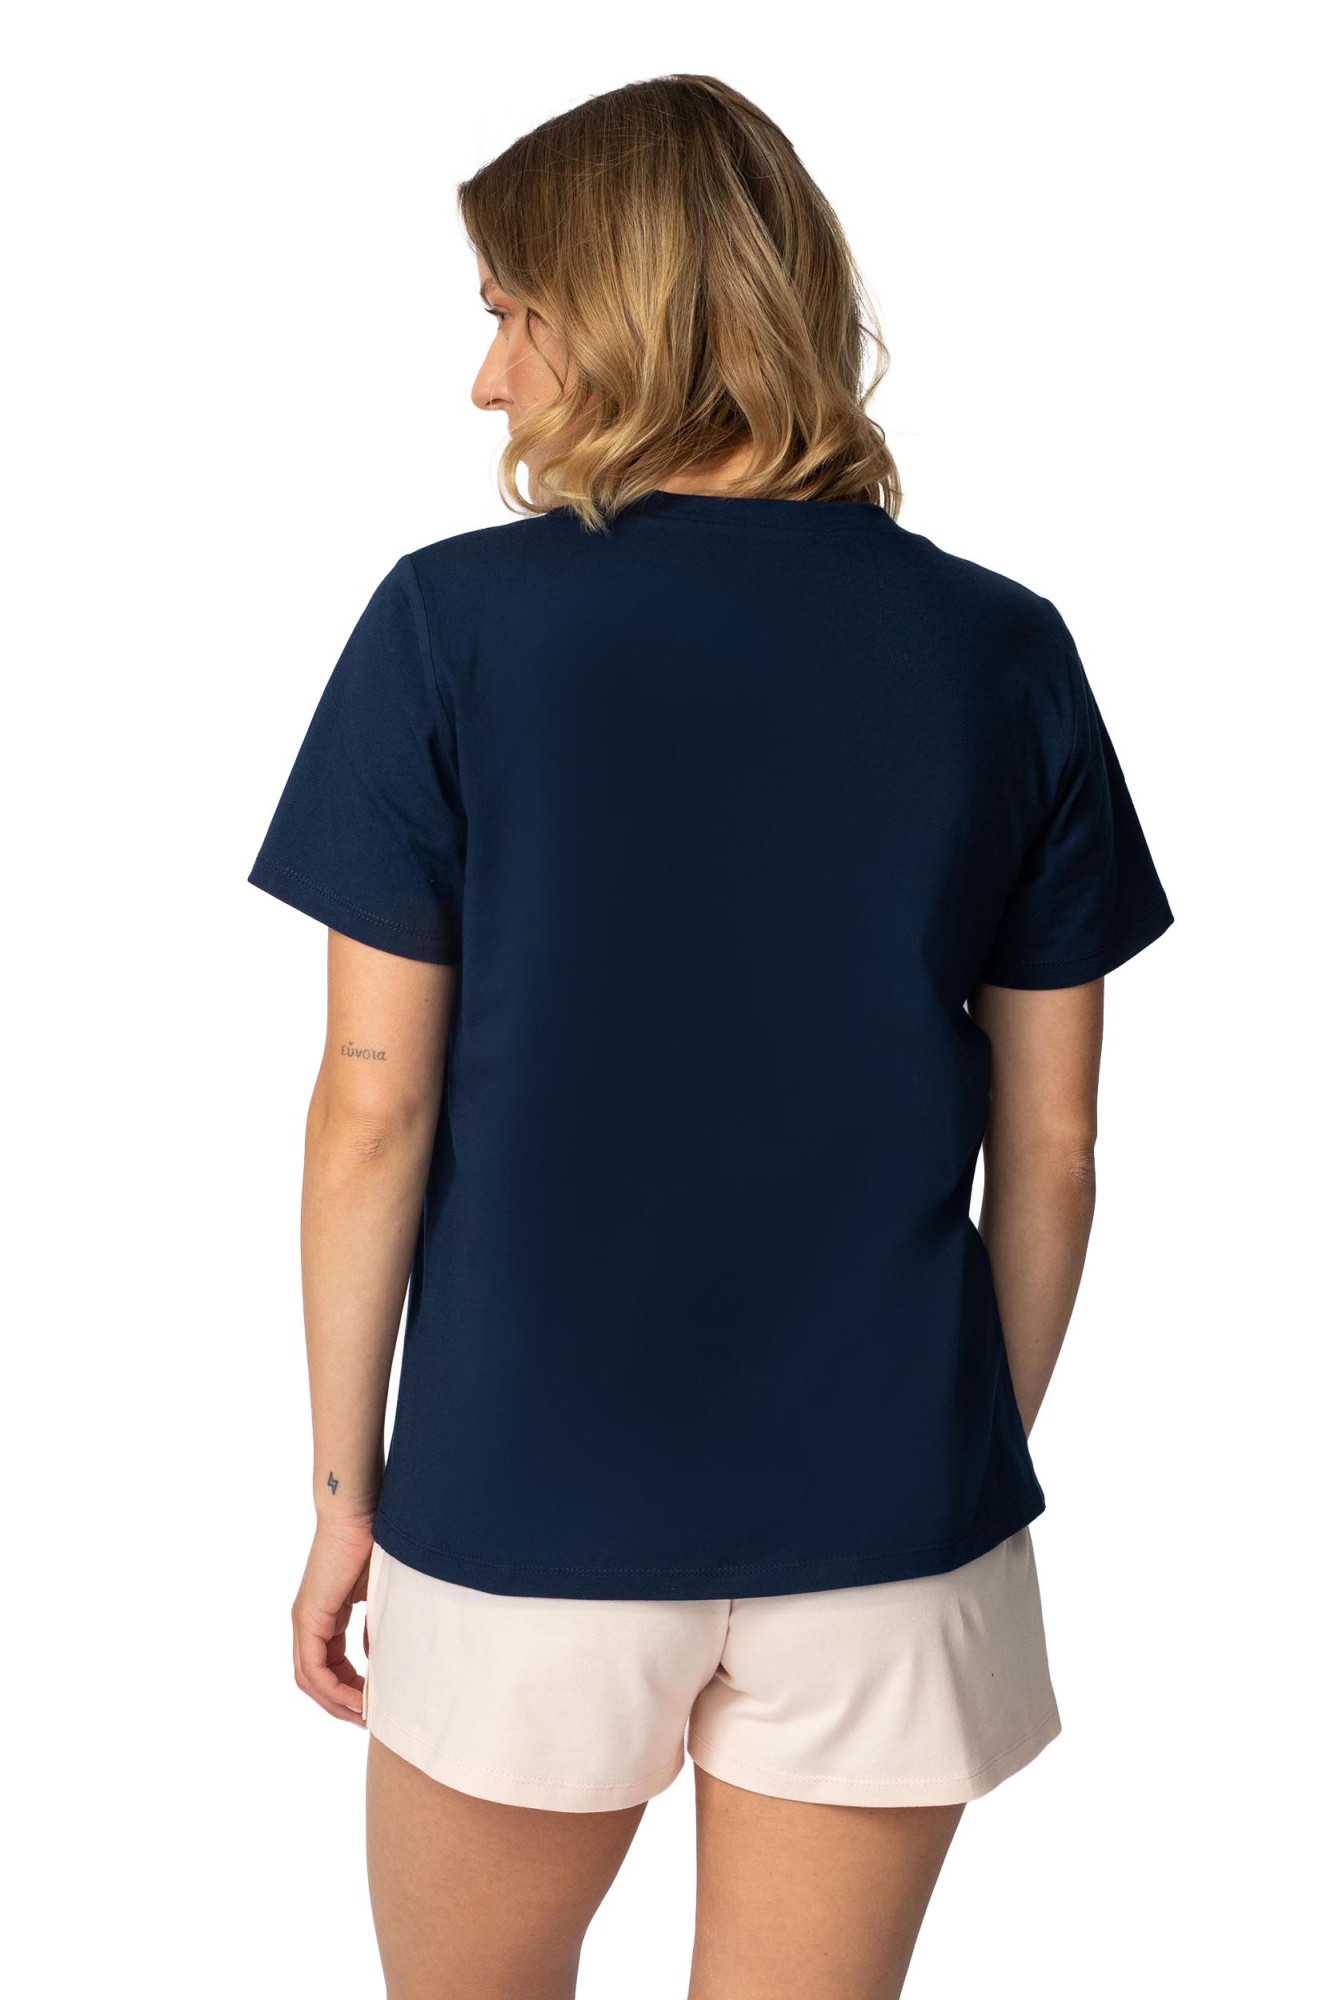 Tričko LaLupa LA109 Navy Blue XL